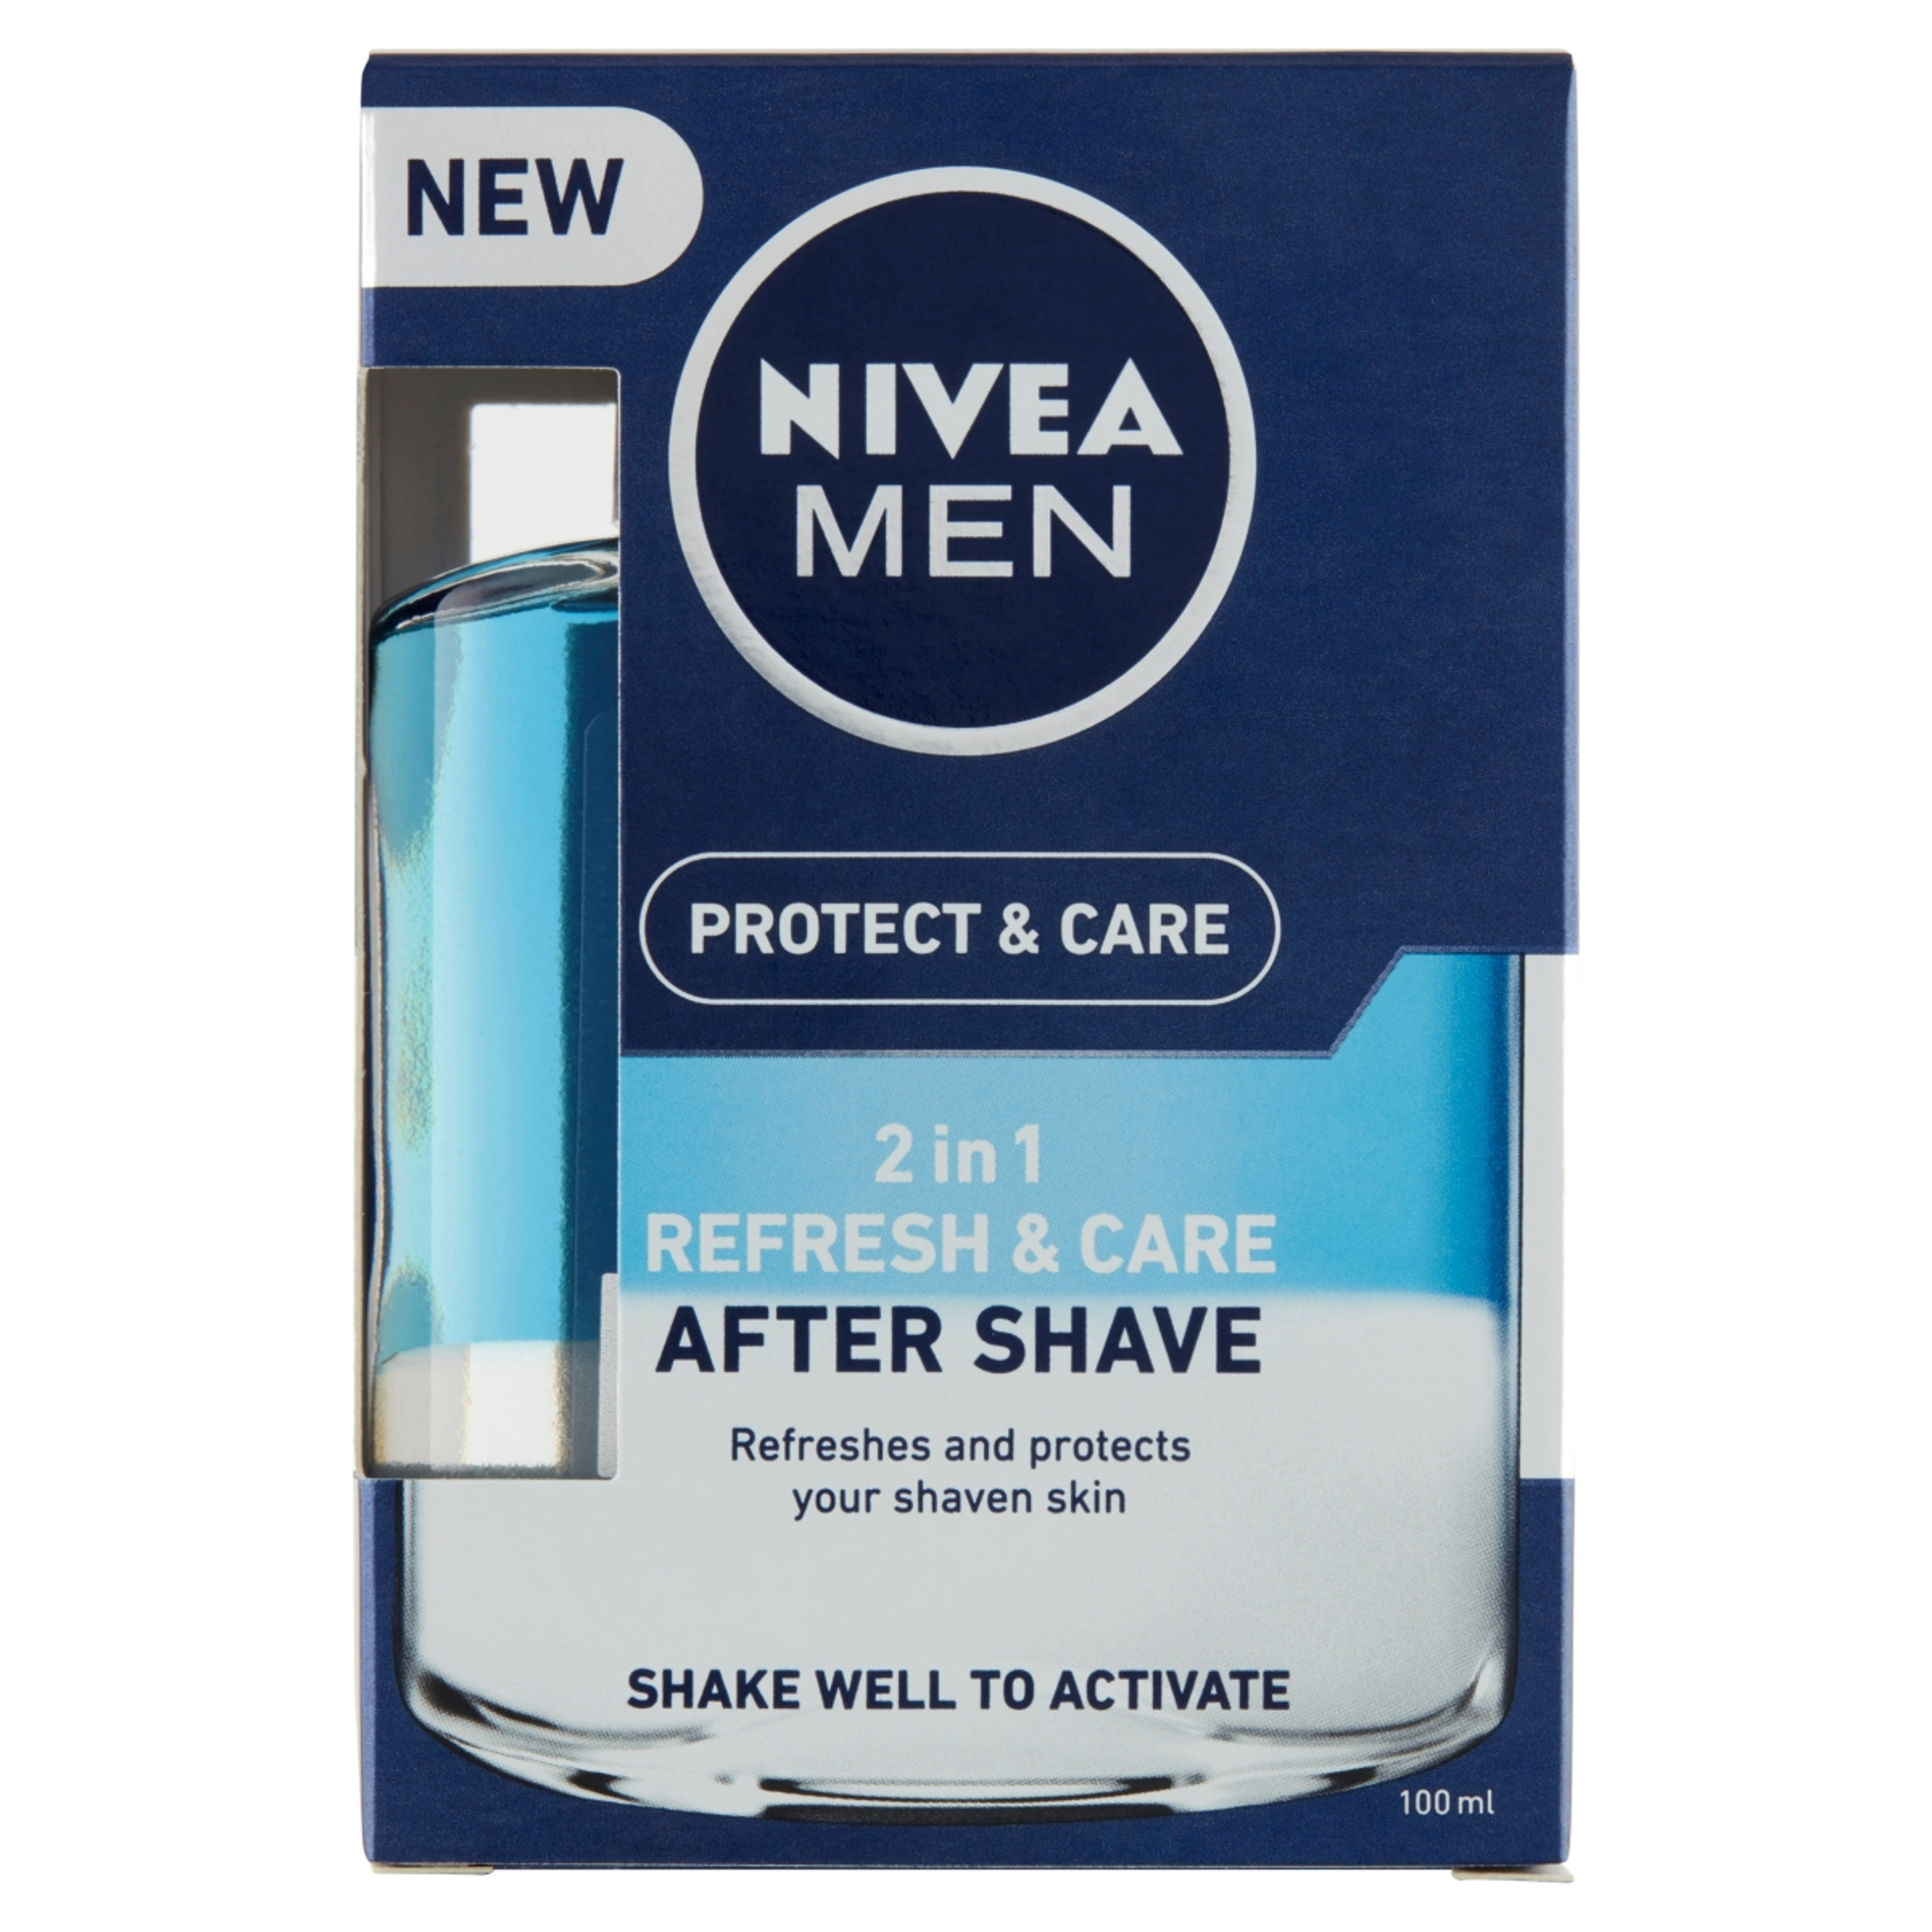 NIVEA MEN Protect & Care 2 in 1 Frissítő és Ápoló After Shave Lotion - 100 ml-1